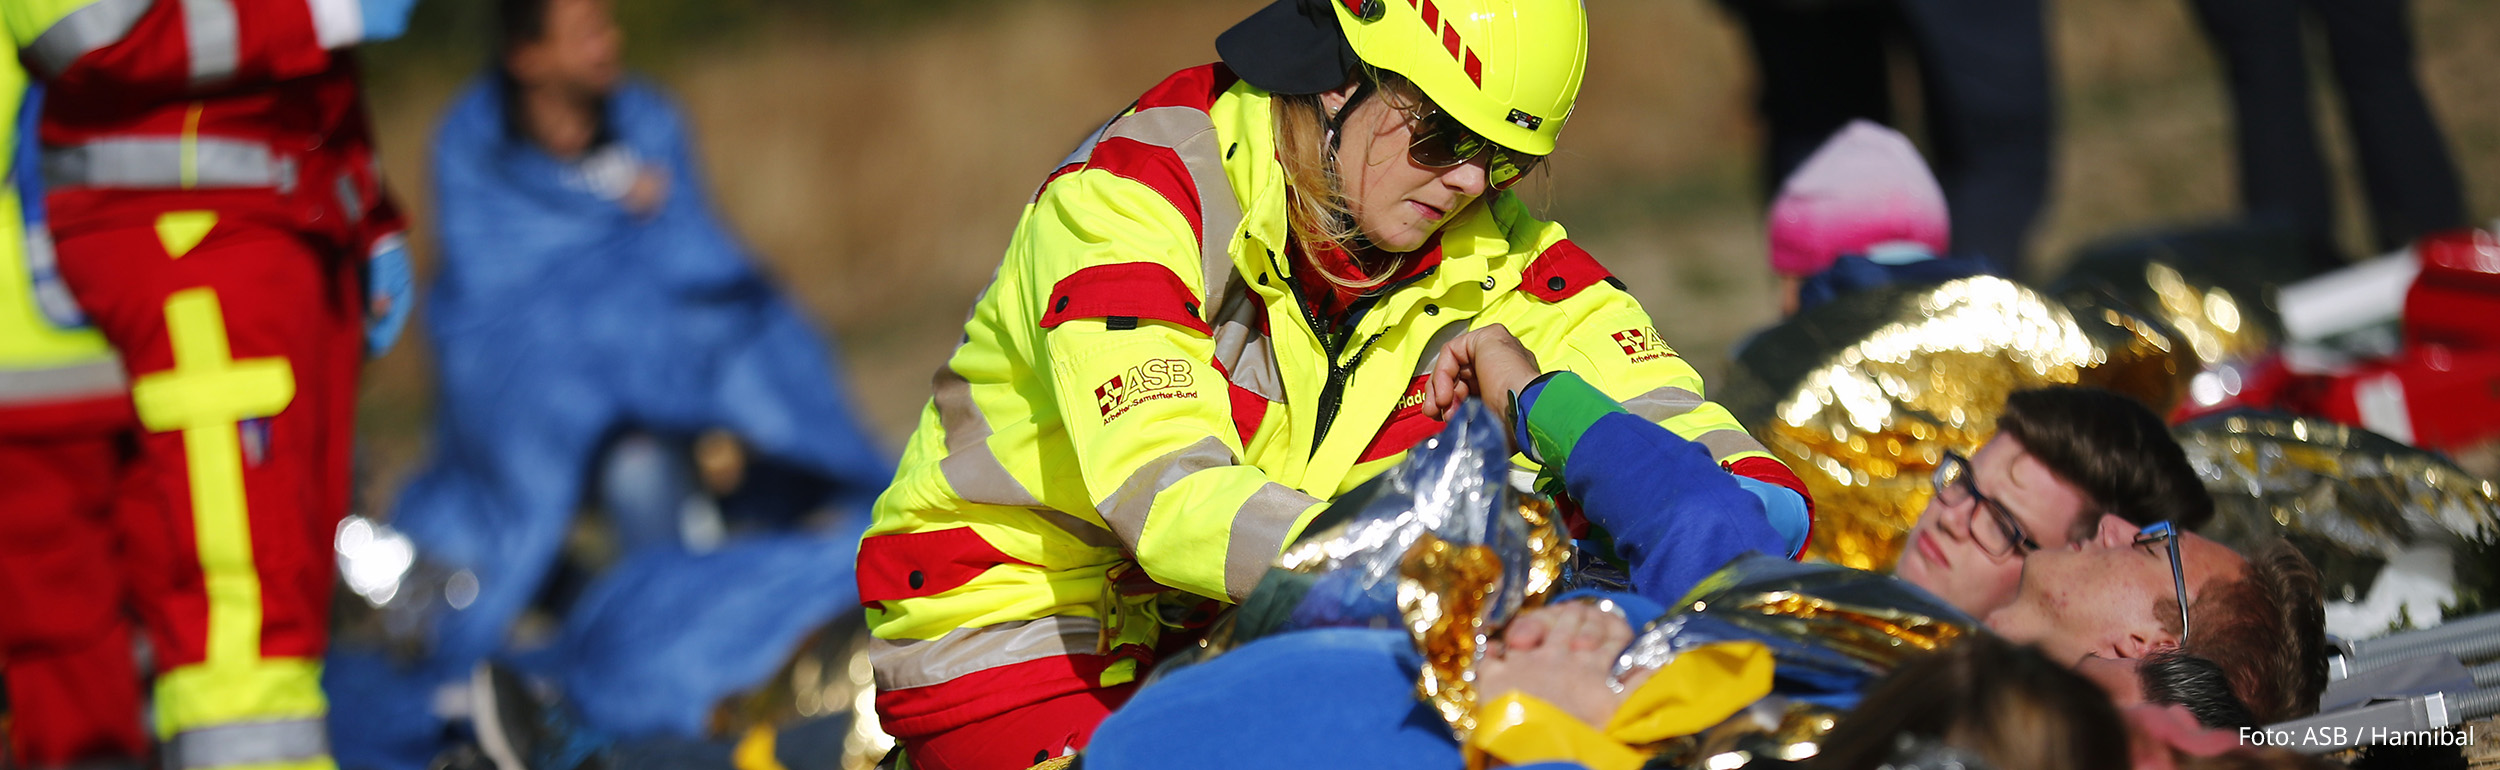 Katastrophenschutzübung: Sanitäterin versorgt mehrere Verletzte